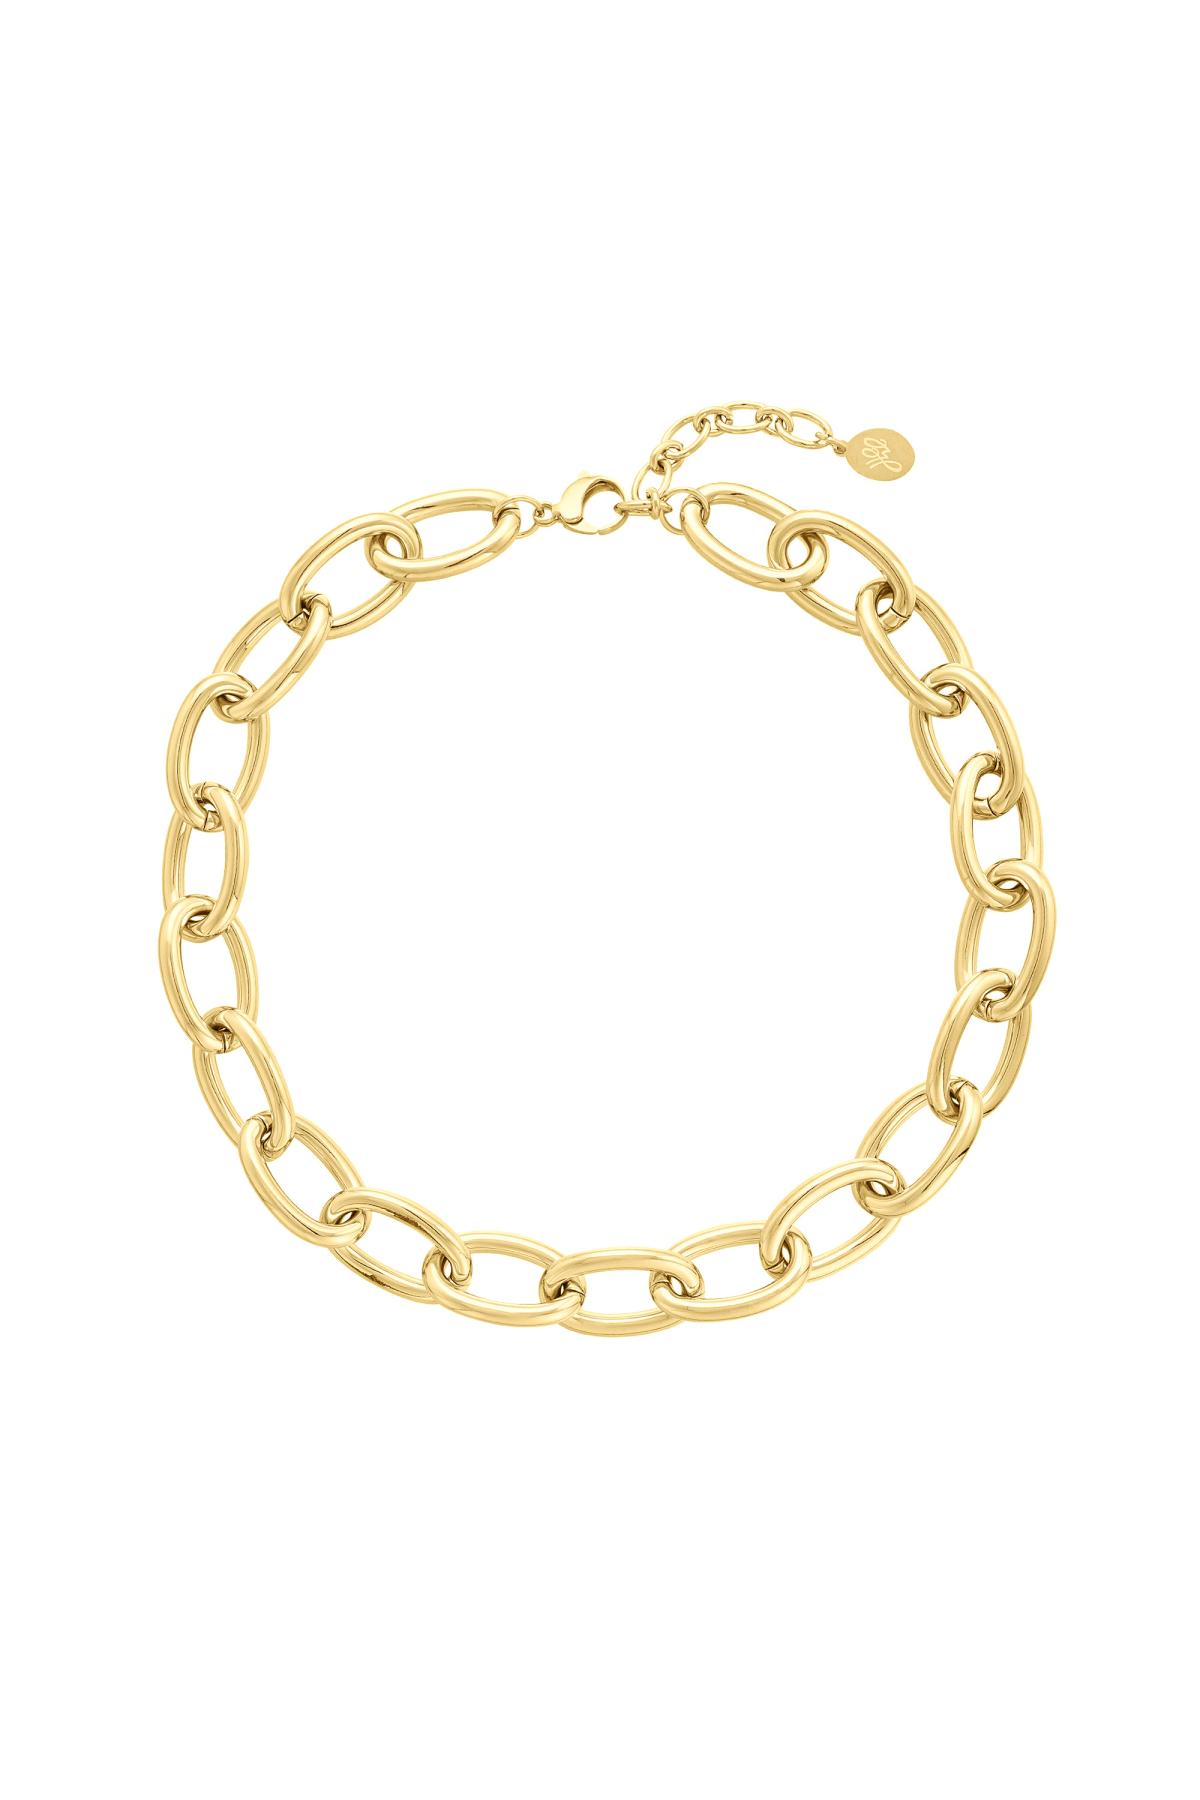 Klobige Halskette mit großen Gliedern Gold Edelstahl h5 